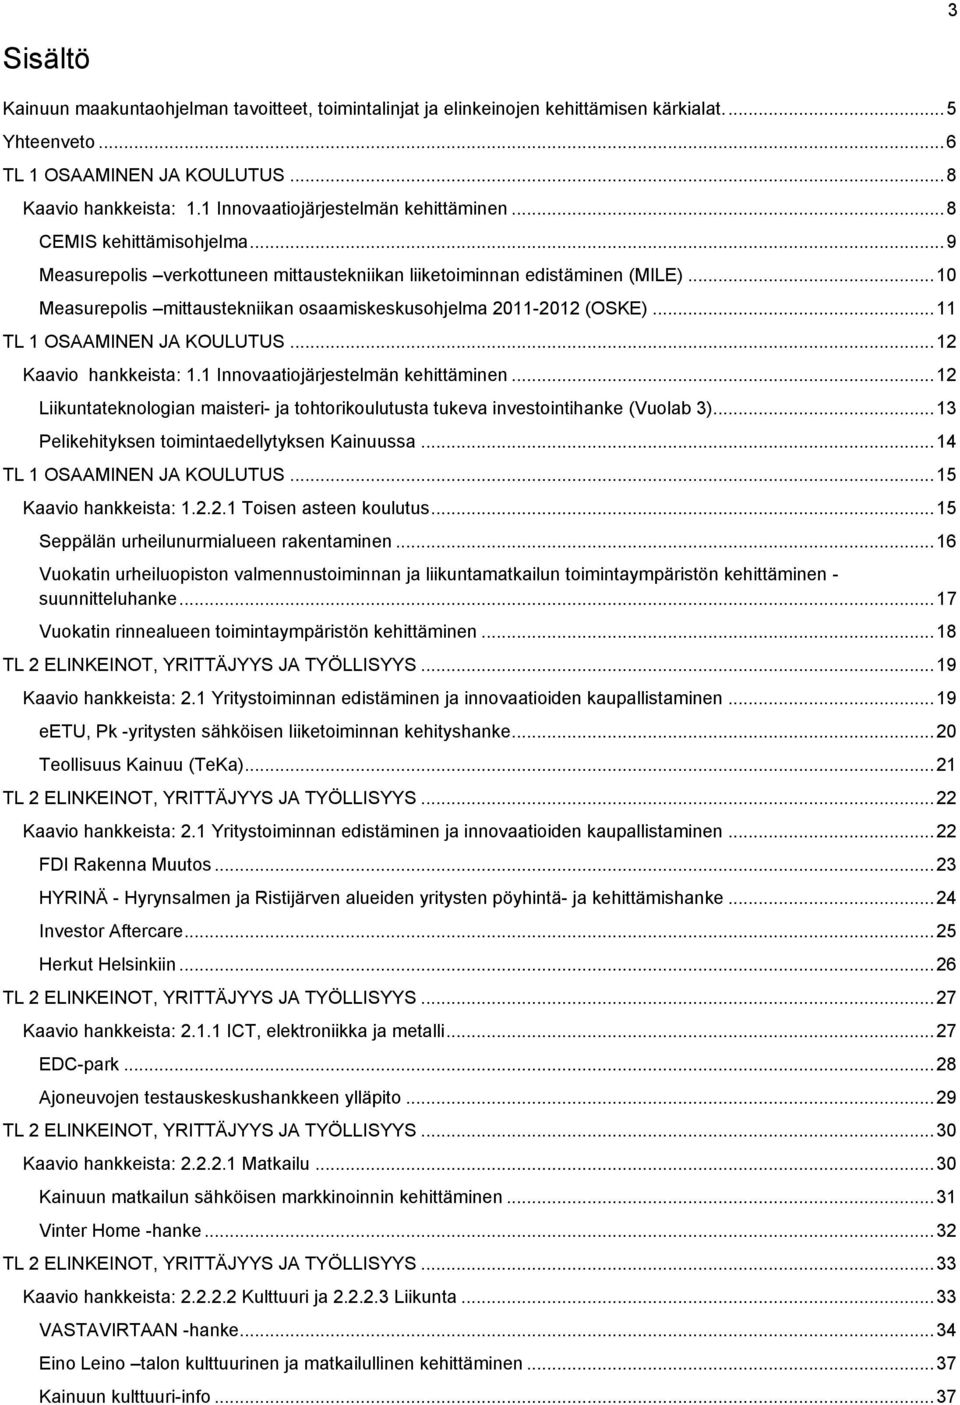 .. 10 Measurepolis mittaustekniikan osaamiskeskusohjelma 2011-2012 (OSKE)... 11 TL 1 OSAAMINEN JA KOULUTUS... 12 Kaavio hankkeista: 1.1 Innovaatiojärjestelmän kehittäminen.